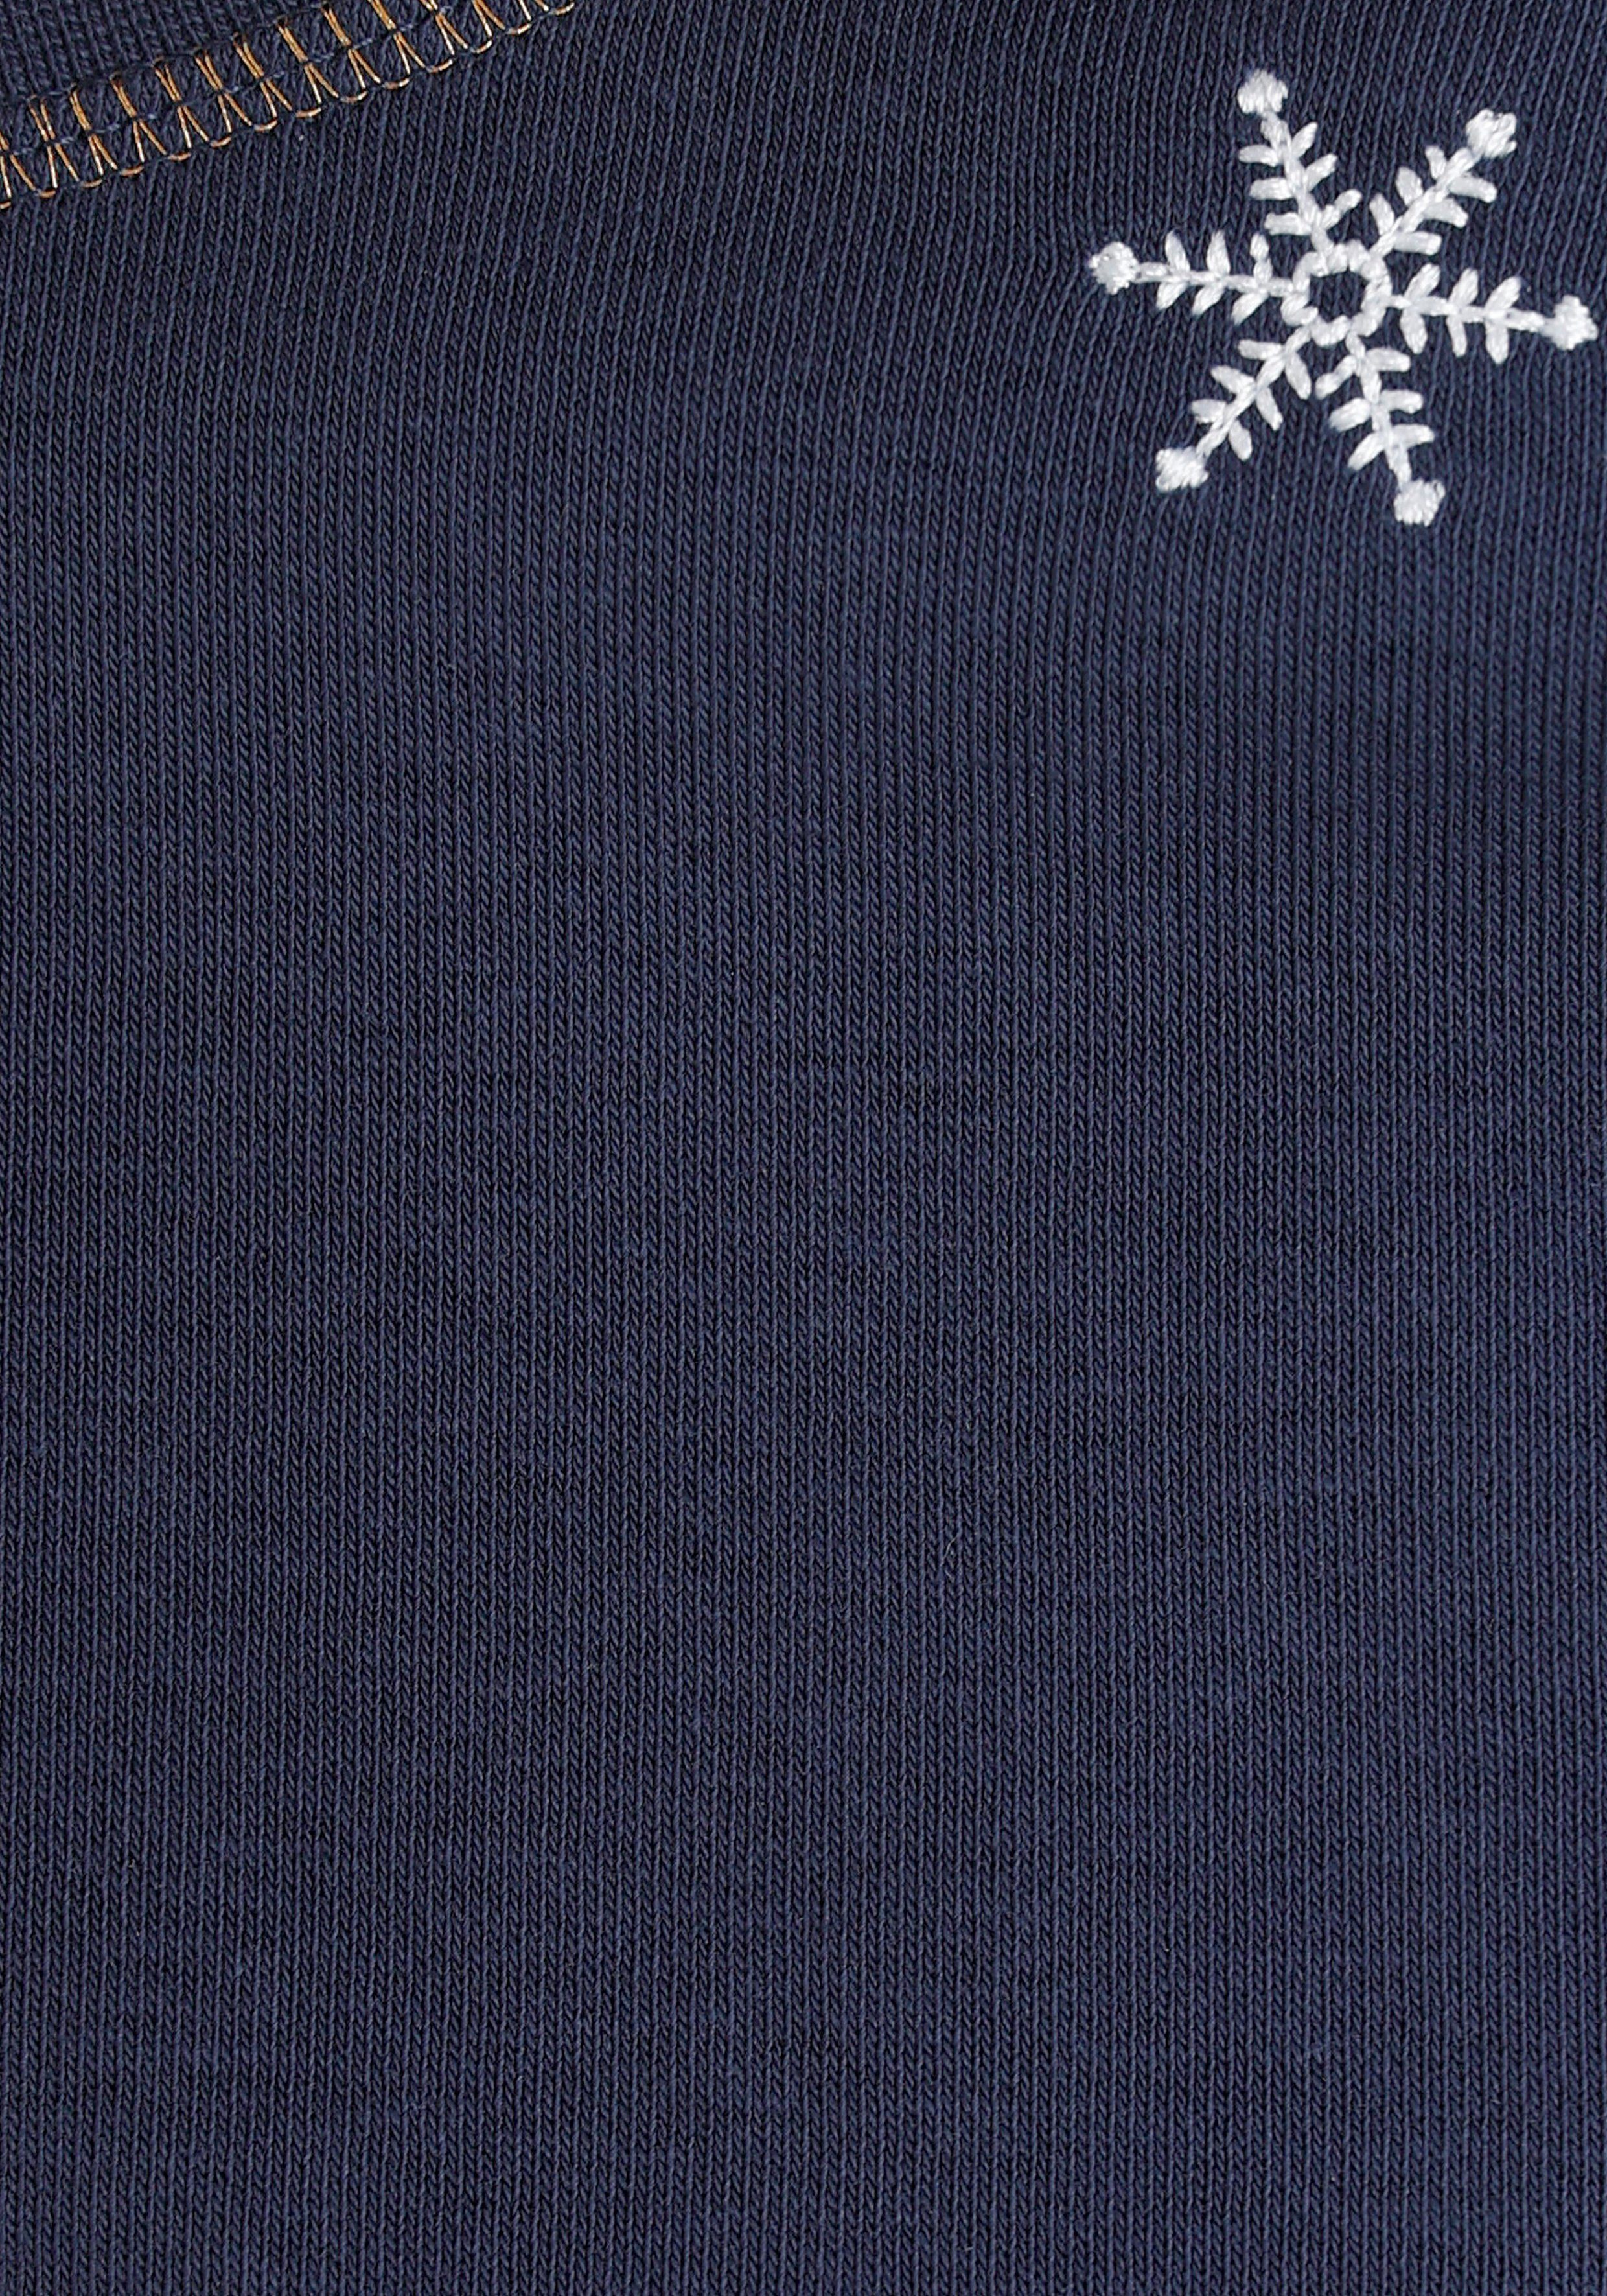 Sweatshirt NEUE mit Schneeflocken MARKE! - bestickten edel DELMAO